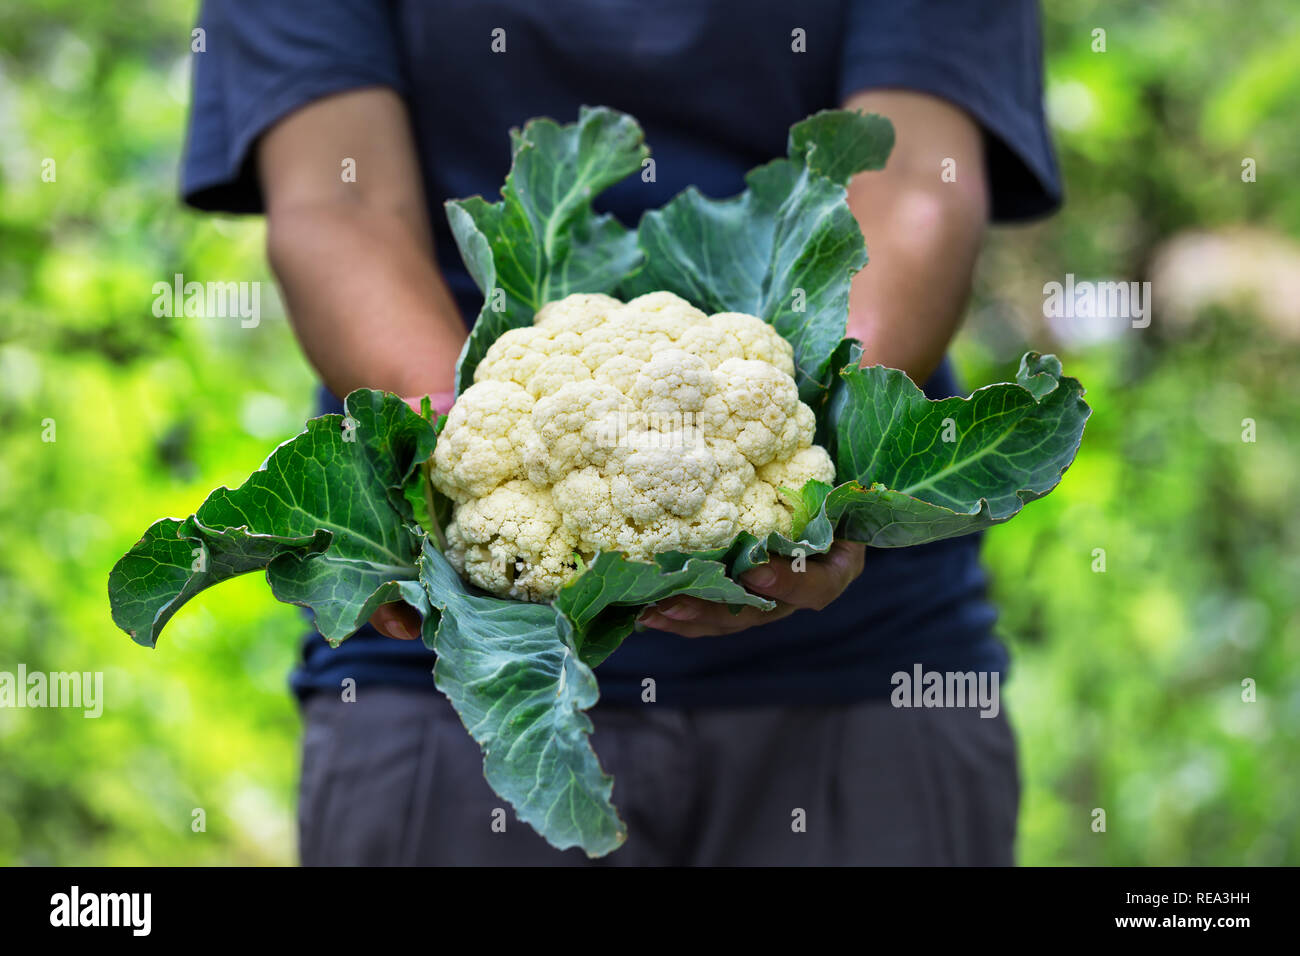 Tête de chou-fleur avec des feuilles dans les mains d'une agricultrice. Le concept de croissance et une riche récolte. Banque D'Images